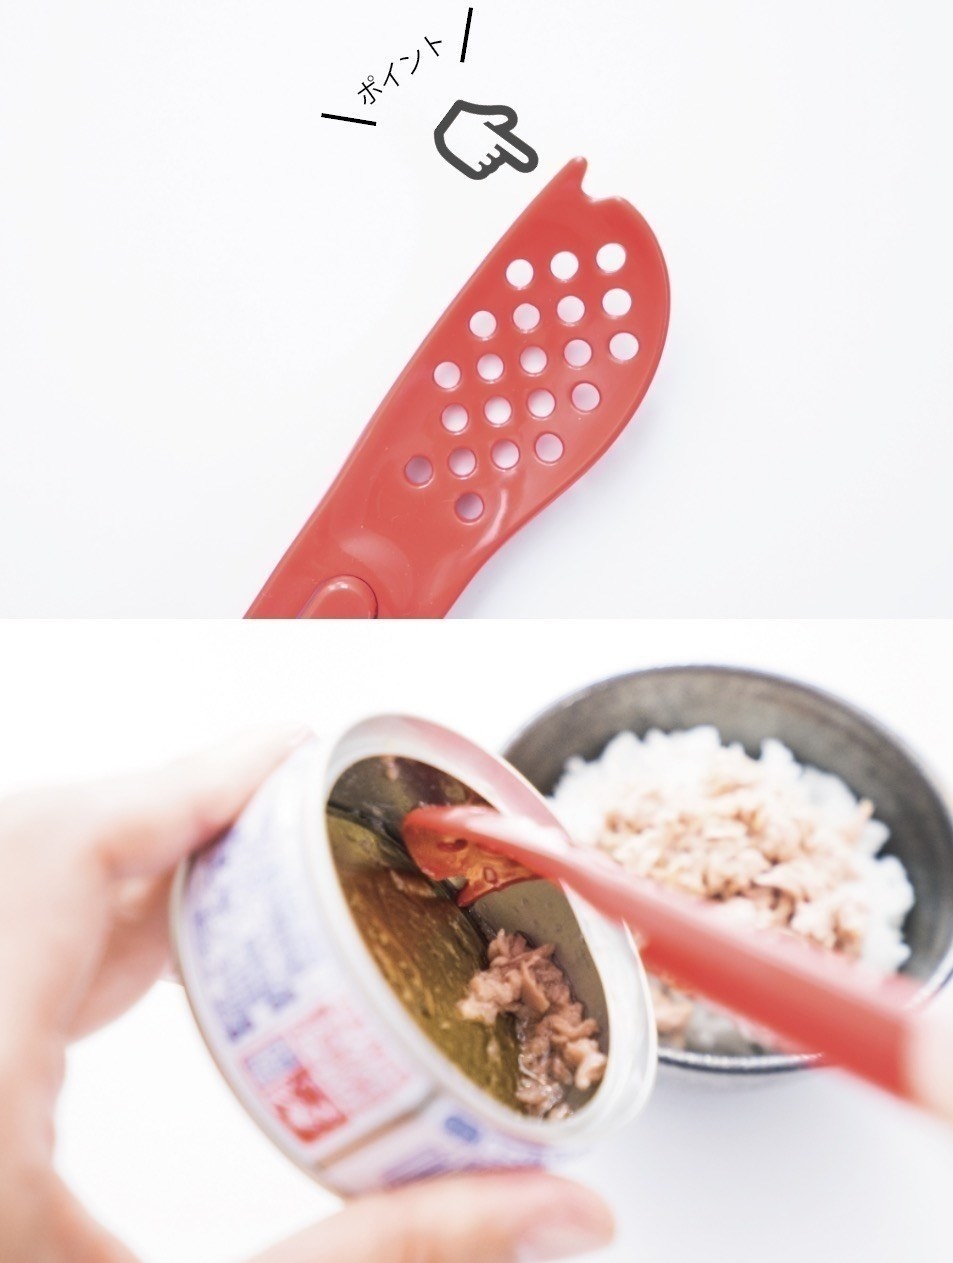 DAISO（ダイソー）のおすすめキッチンアイテム「ツナ缶スプーン」